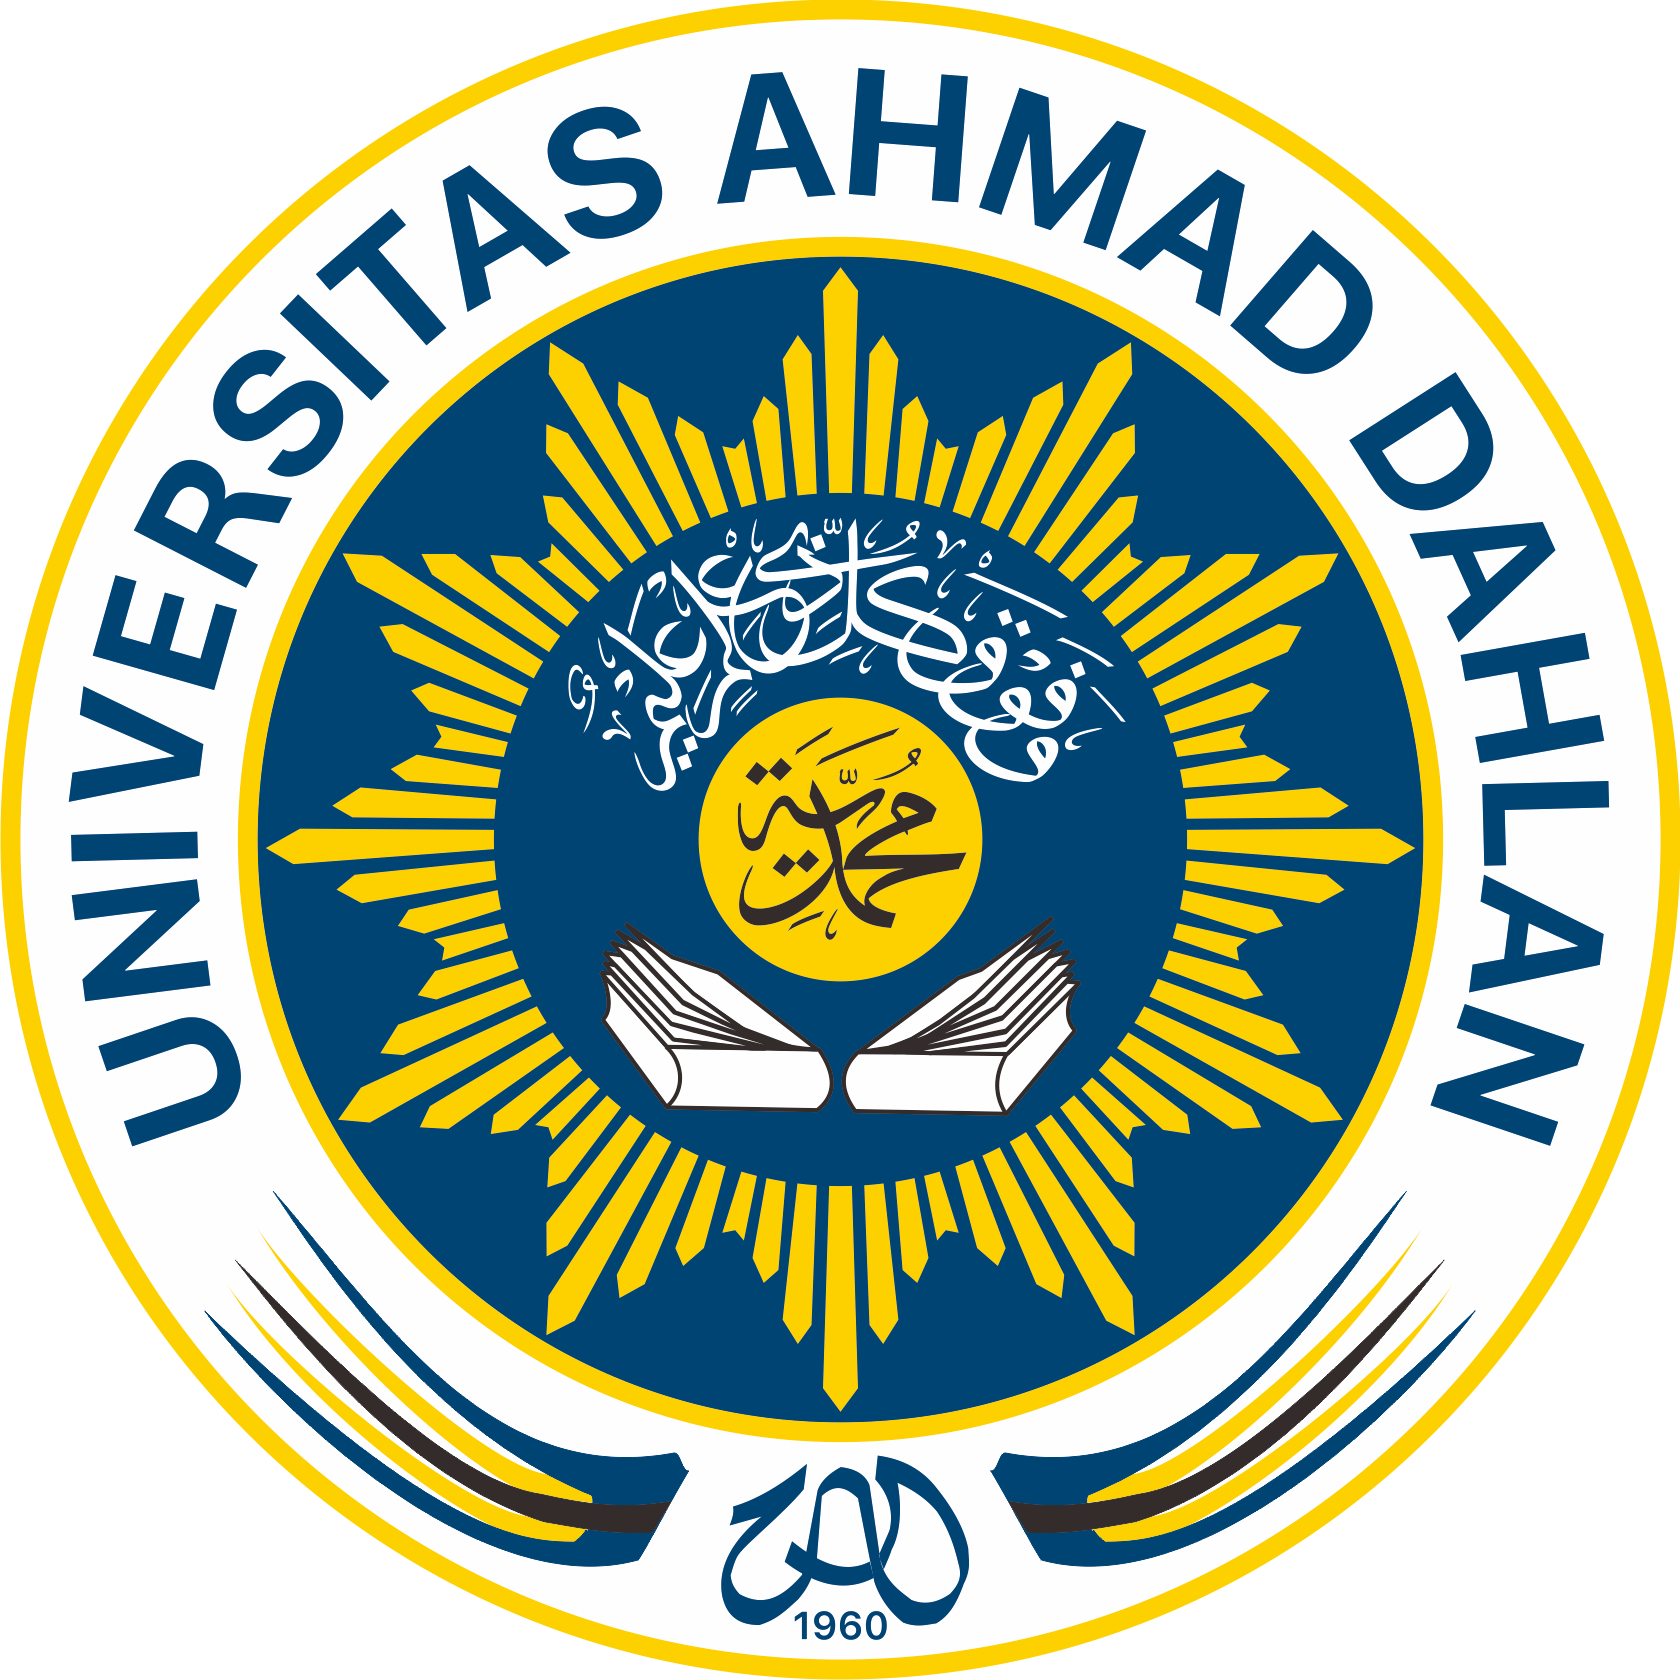  Universitas  Ahmad Dahlan UAD 